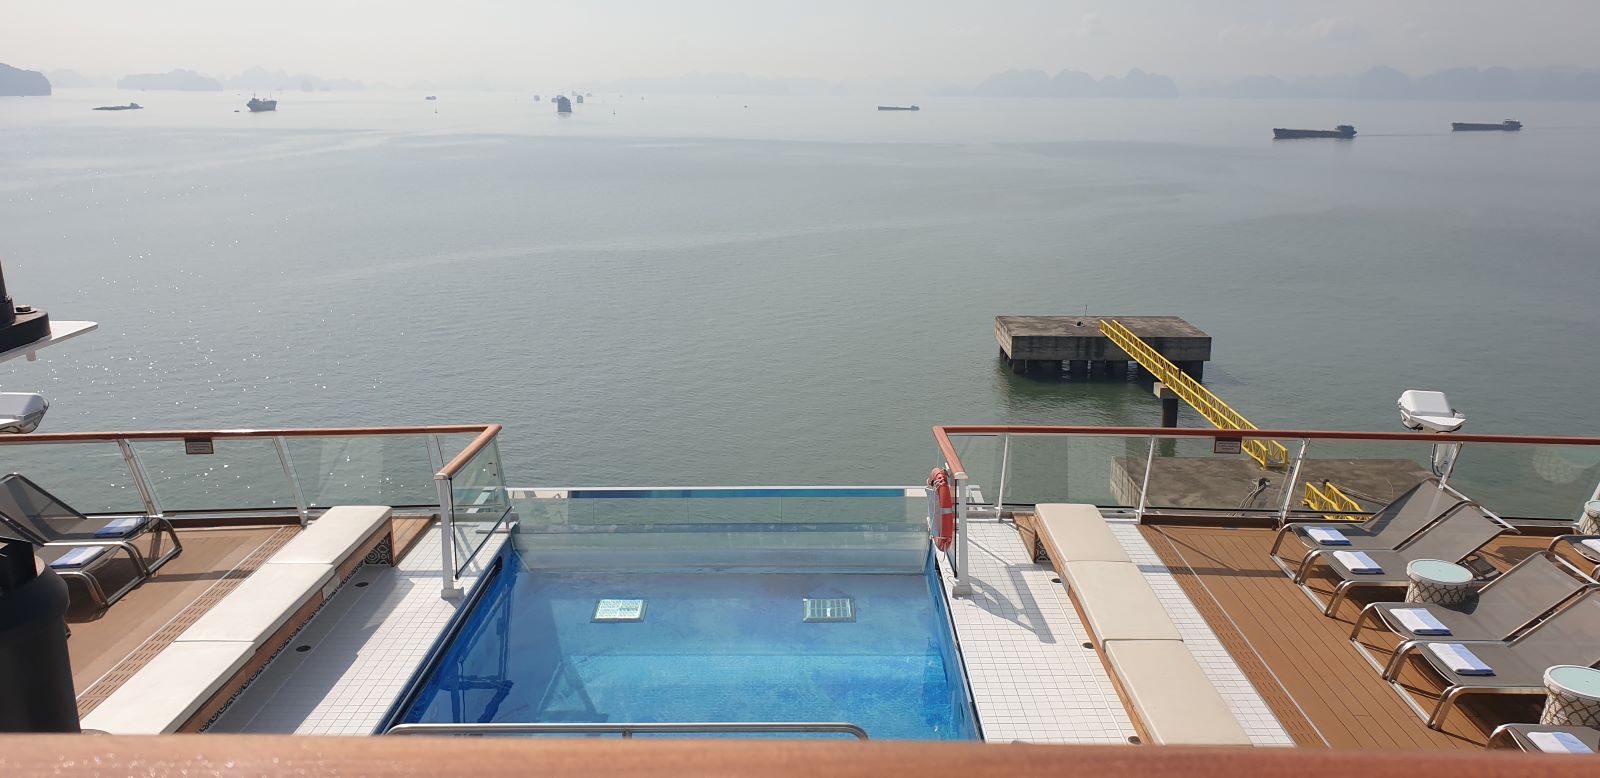 Một bể bơi nhỏ phía sau tàu. Ảnh: Nguyễn Hùng